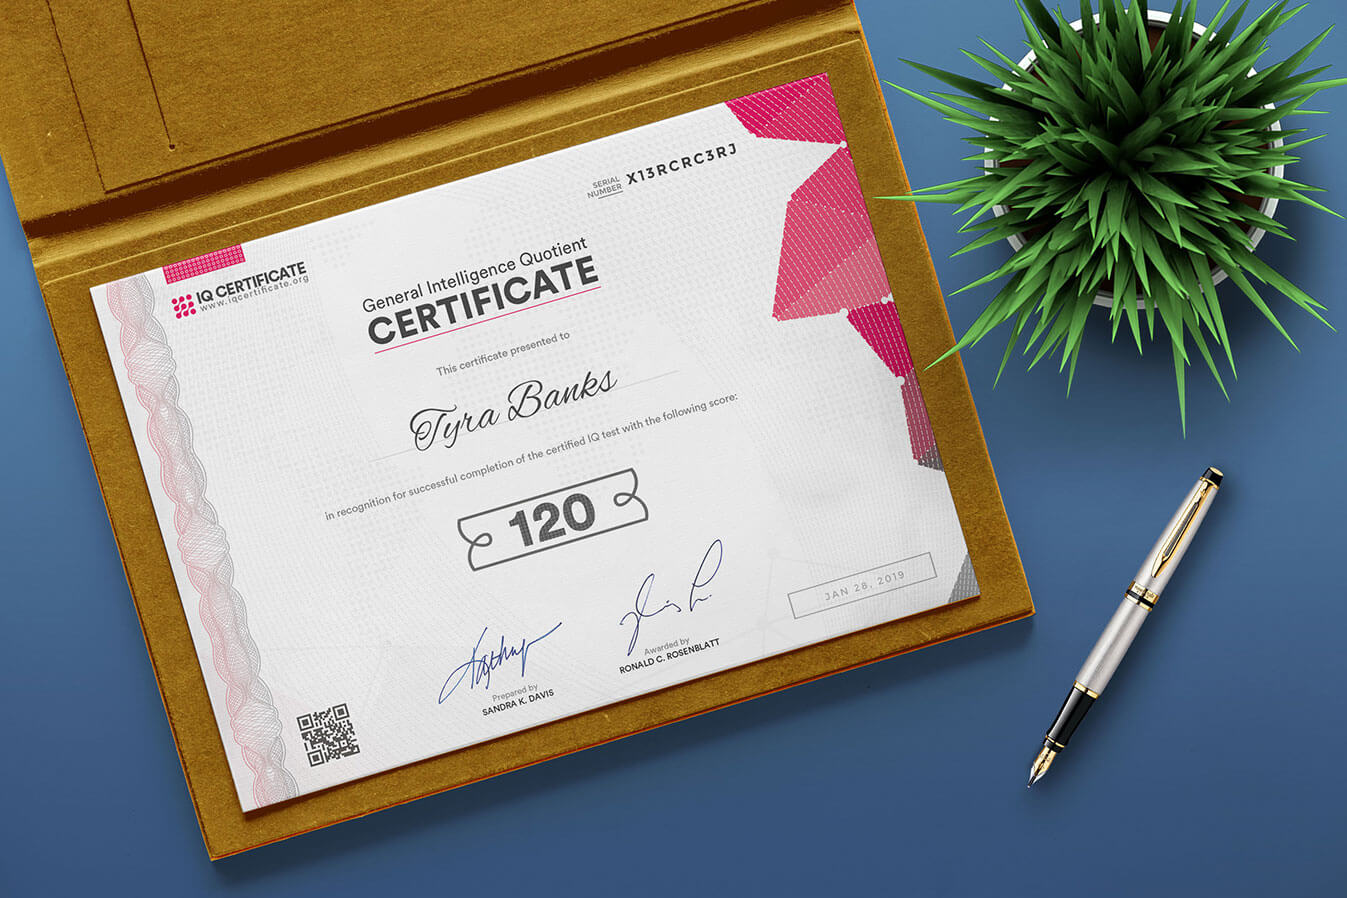 Sample Iq Certificate - Get Your Iq Certificate! Regarding Iq Certificate Template